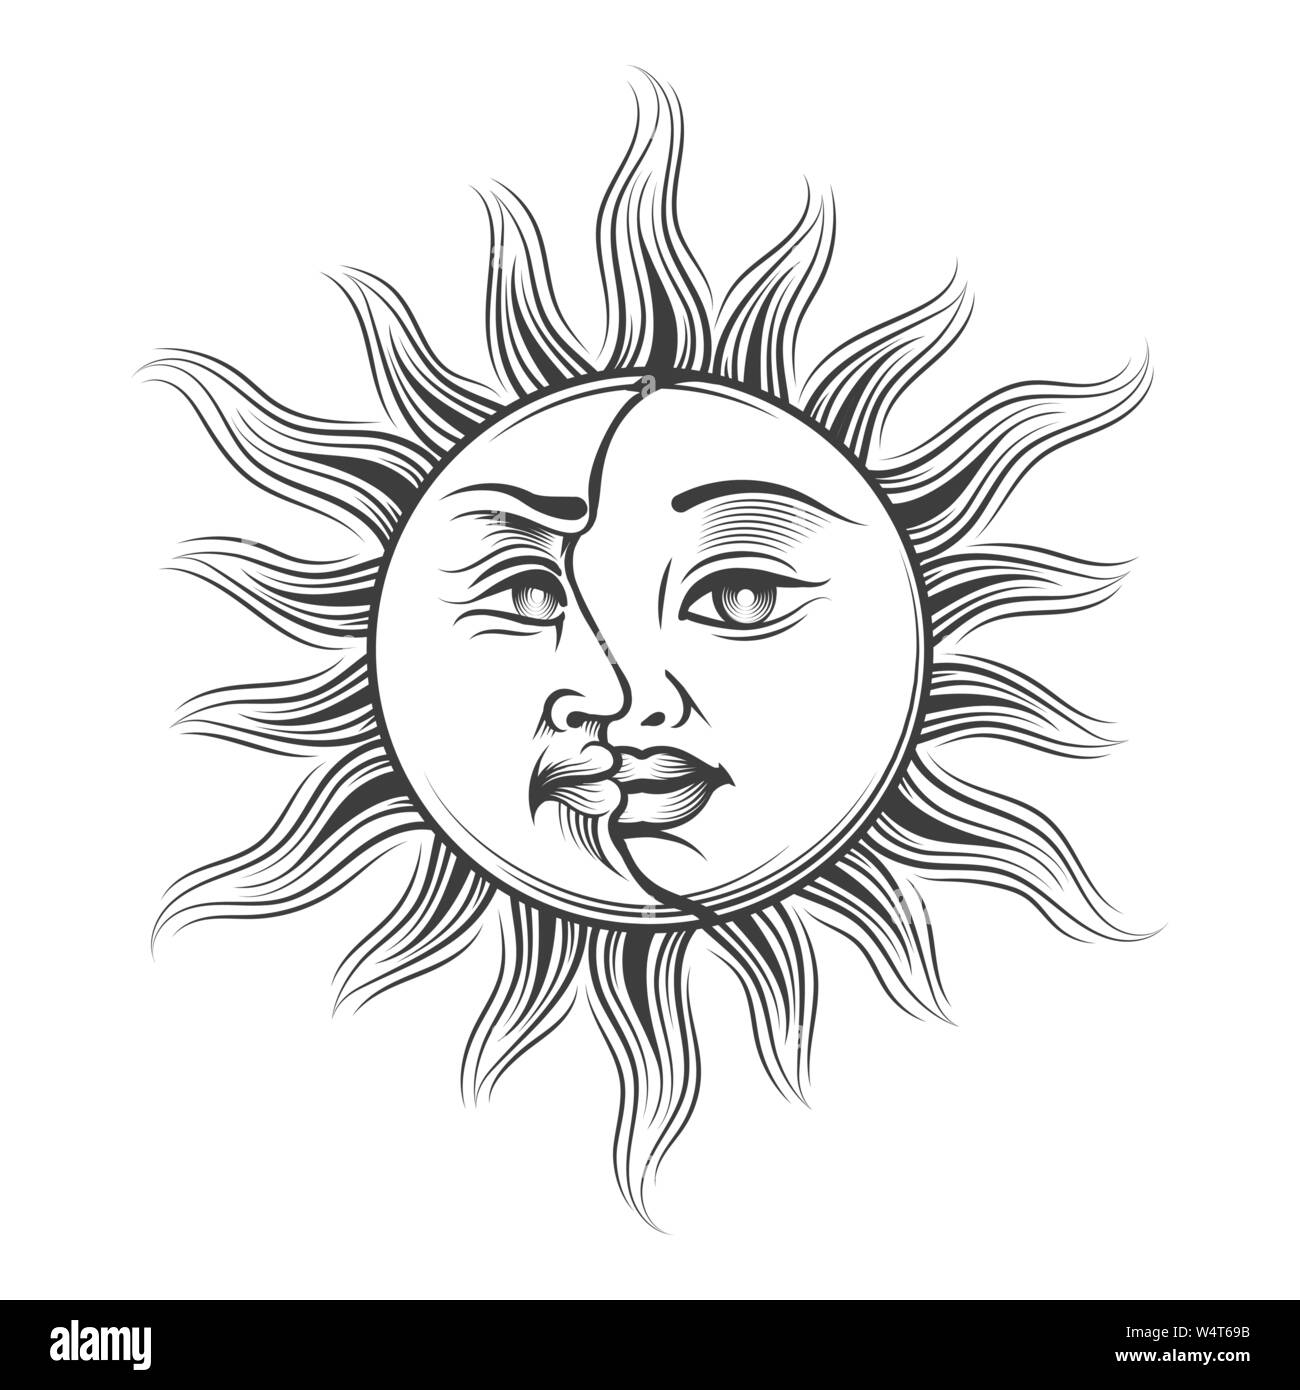 Disegnata a mano il sole e la luna con il volto umano in stile di incisione. Occultismo medioevale simbolo di astrologia. Illustrazione Vettoriale. Illustrazione Vettoriale